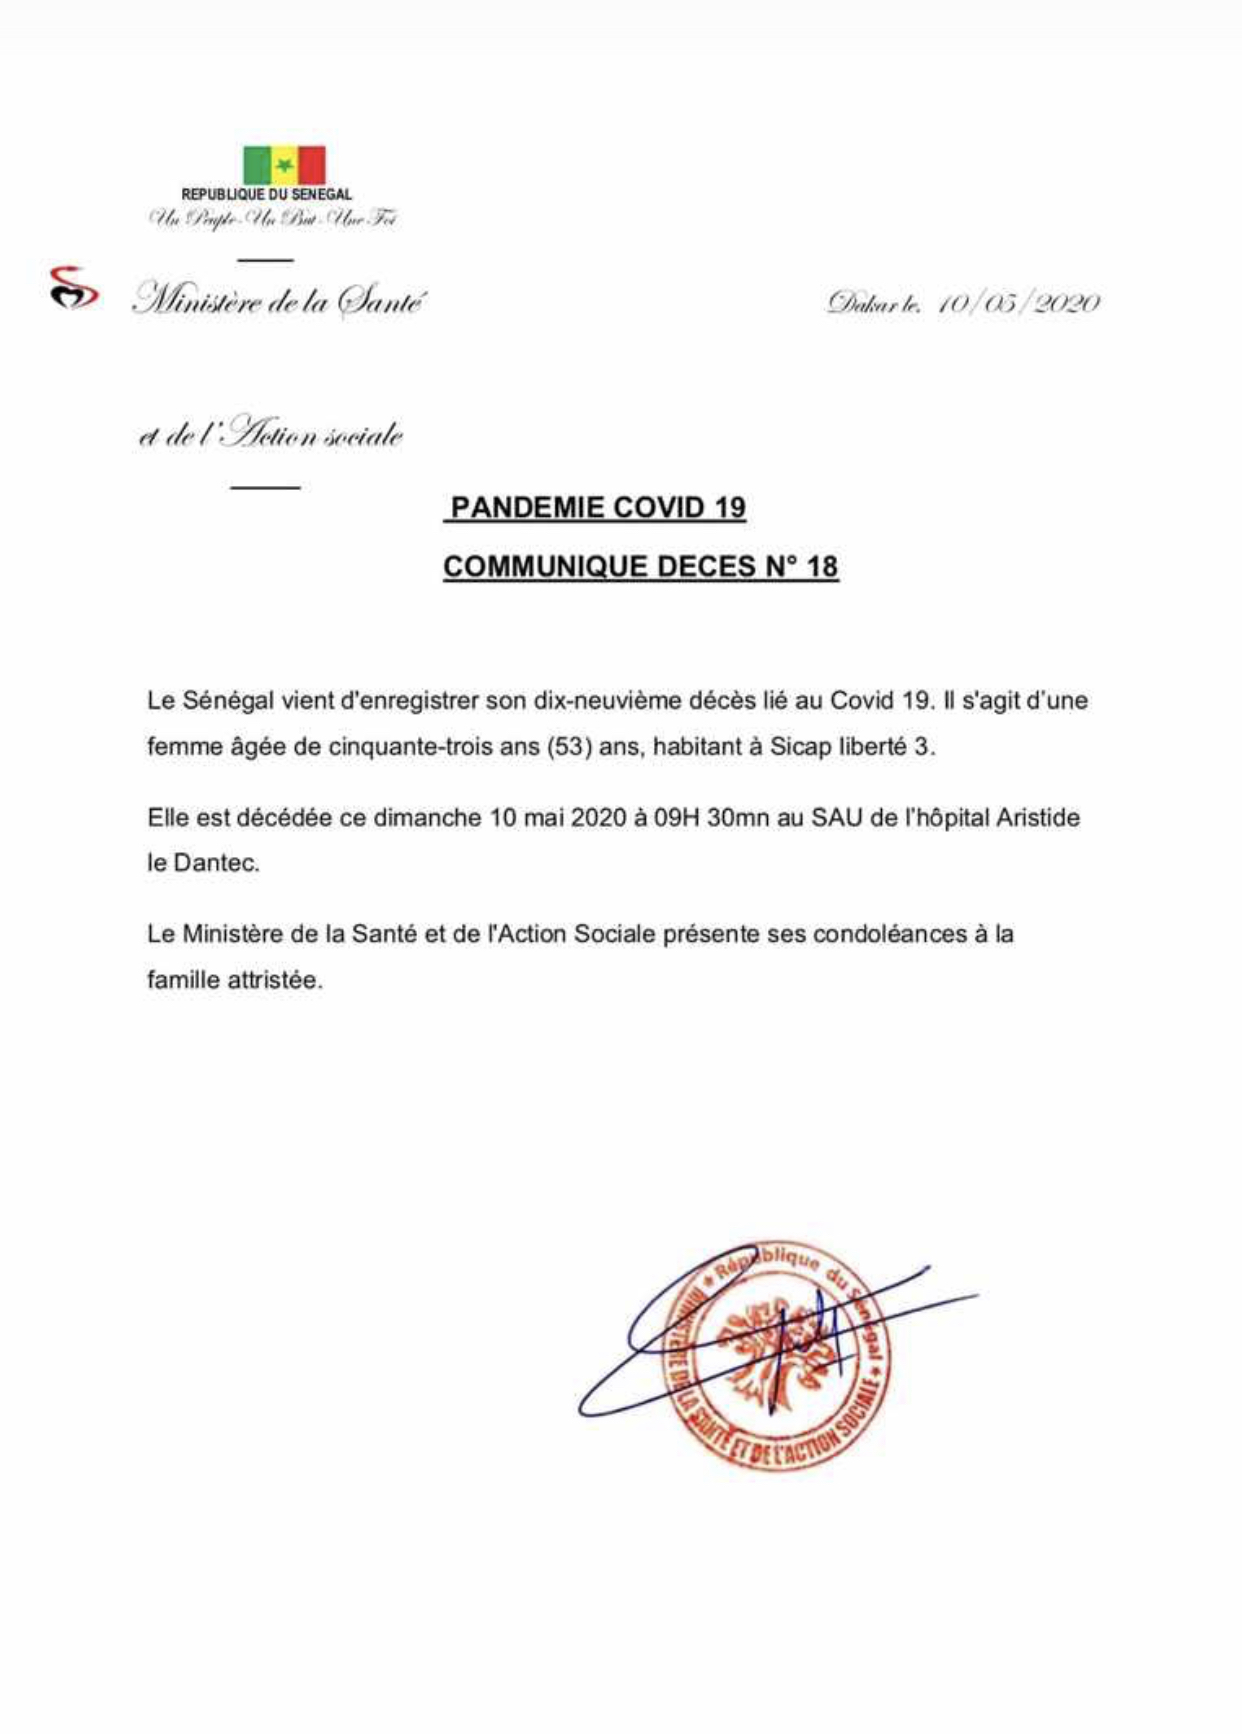 URGENT : Le Sénégal enregistre son 19e décès lié au Covid-19.